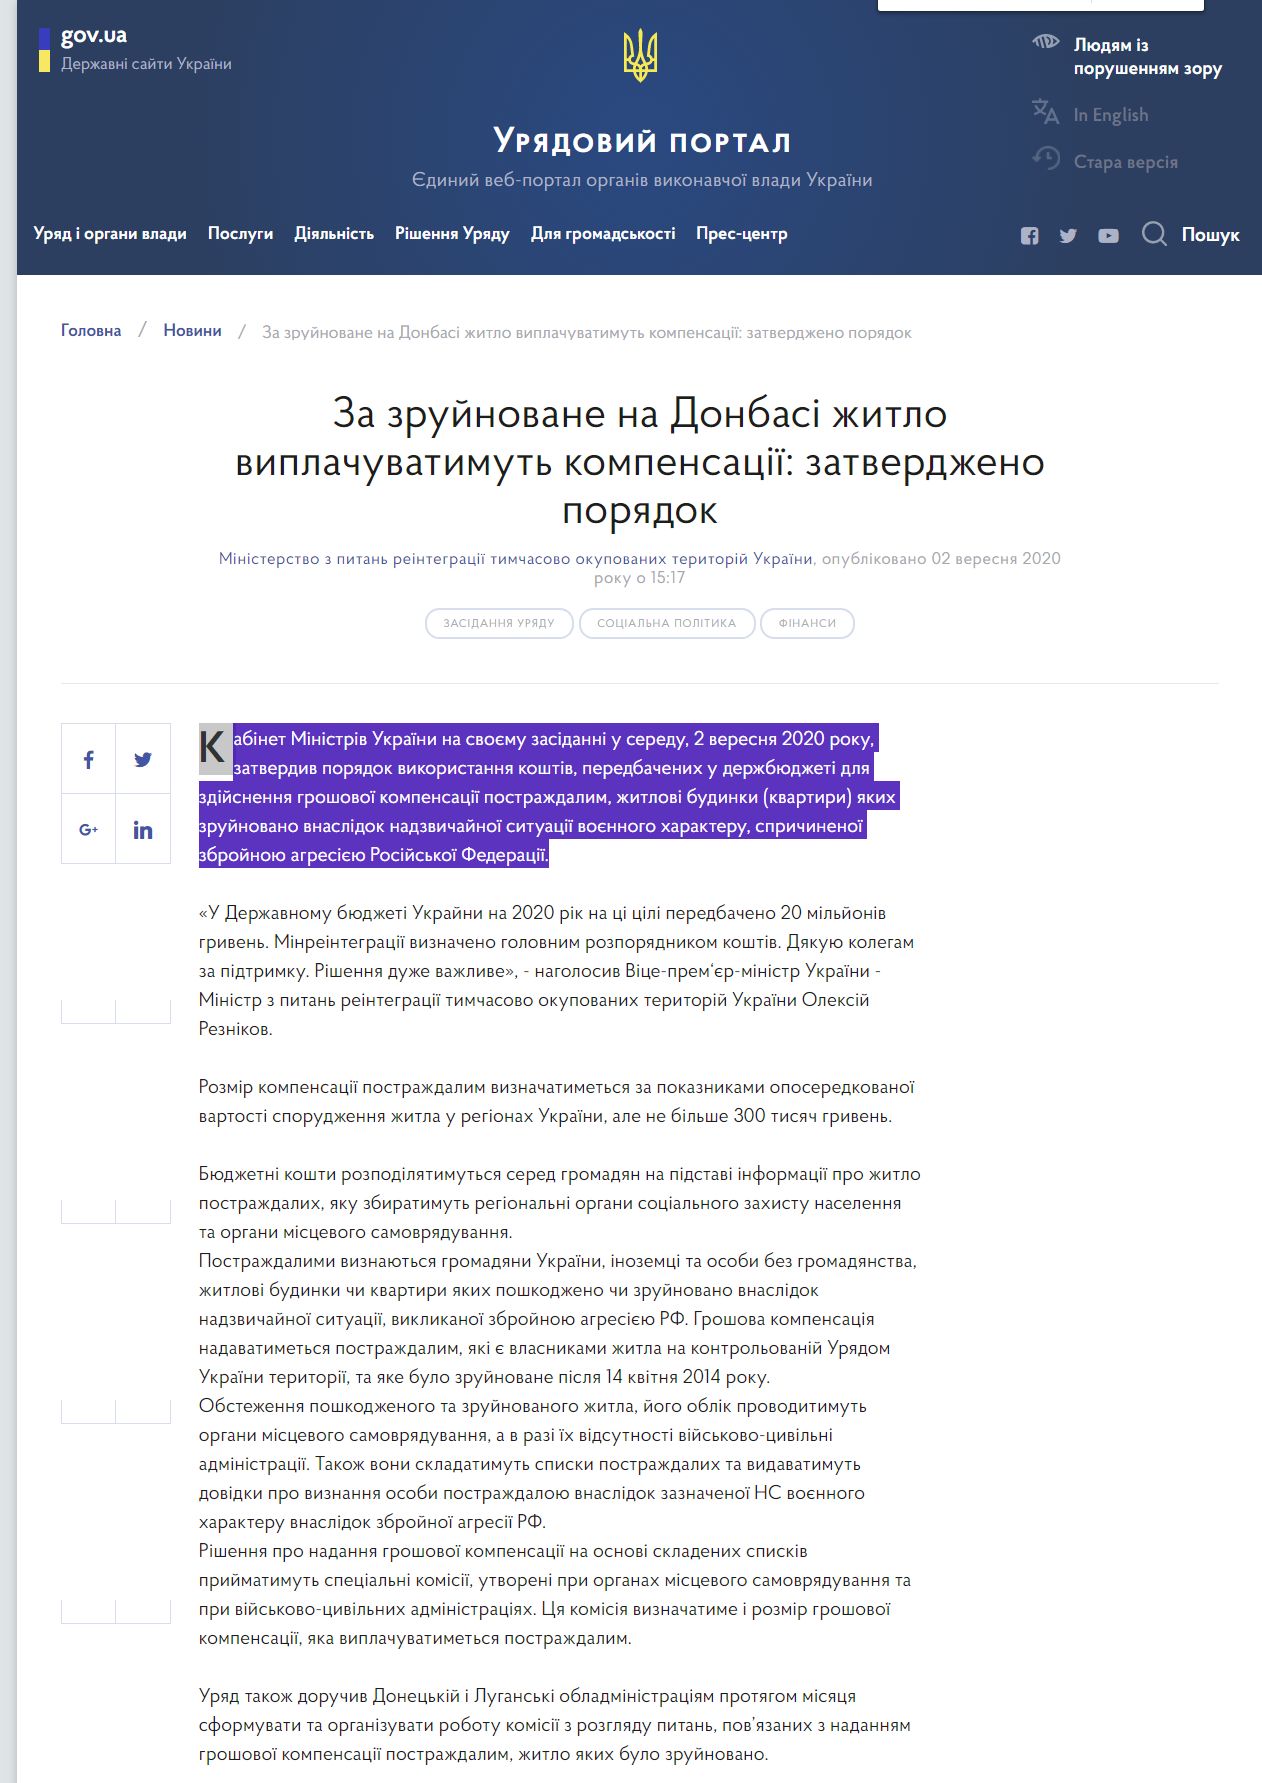 https://www.kmu.gov.ua/news/za-zrujnovane-na-donbasi-zhitlo-viplachuvatimut-kompensaciyi-zatverdzheno-poryadok